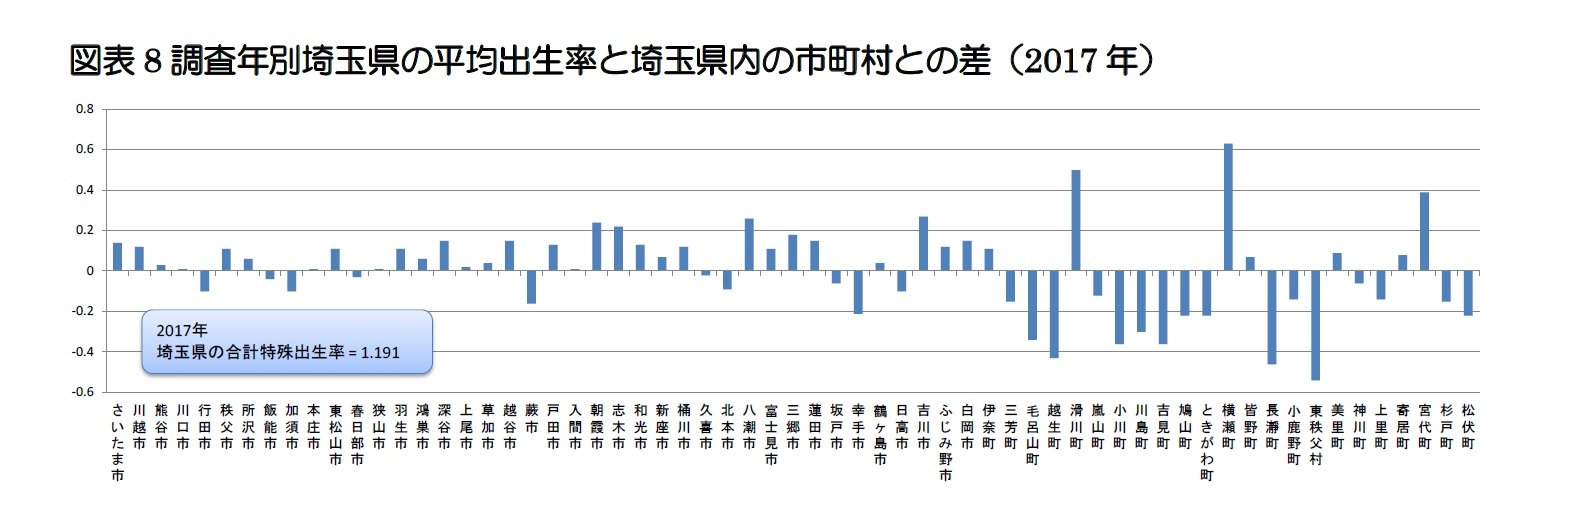 図表8 調査年別埼玉県の平均出生率と埼玉県内の市町村との差（2017年）